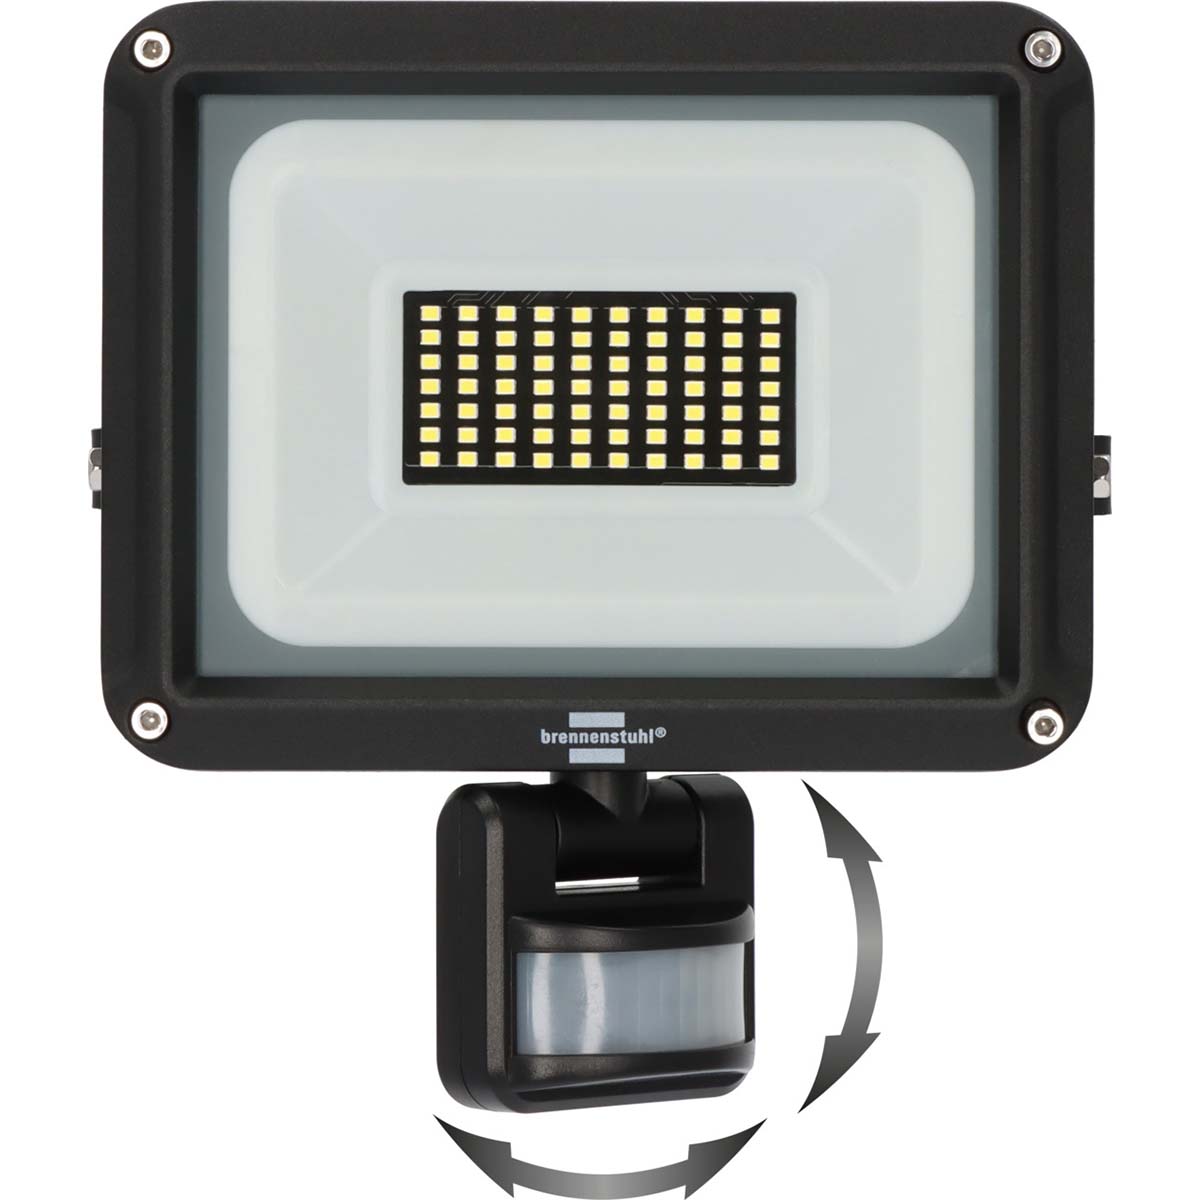 LED reflektor JARO 4060 P (LED reflektor pro montáž na stěnu pro venkovní IP65, 30W, 3450lm, 6500K, s detektorem pohybu)